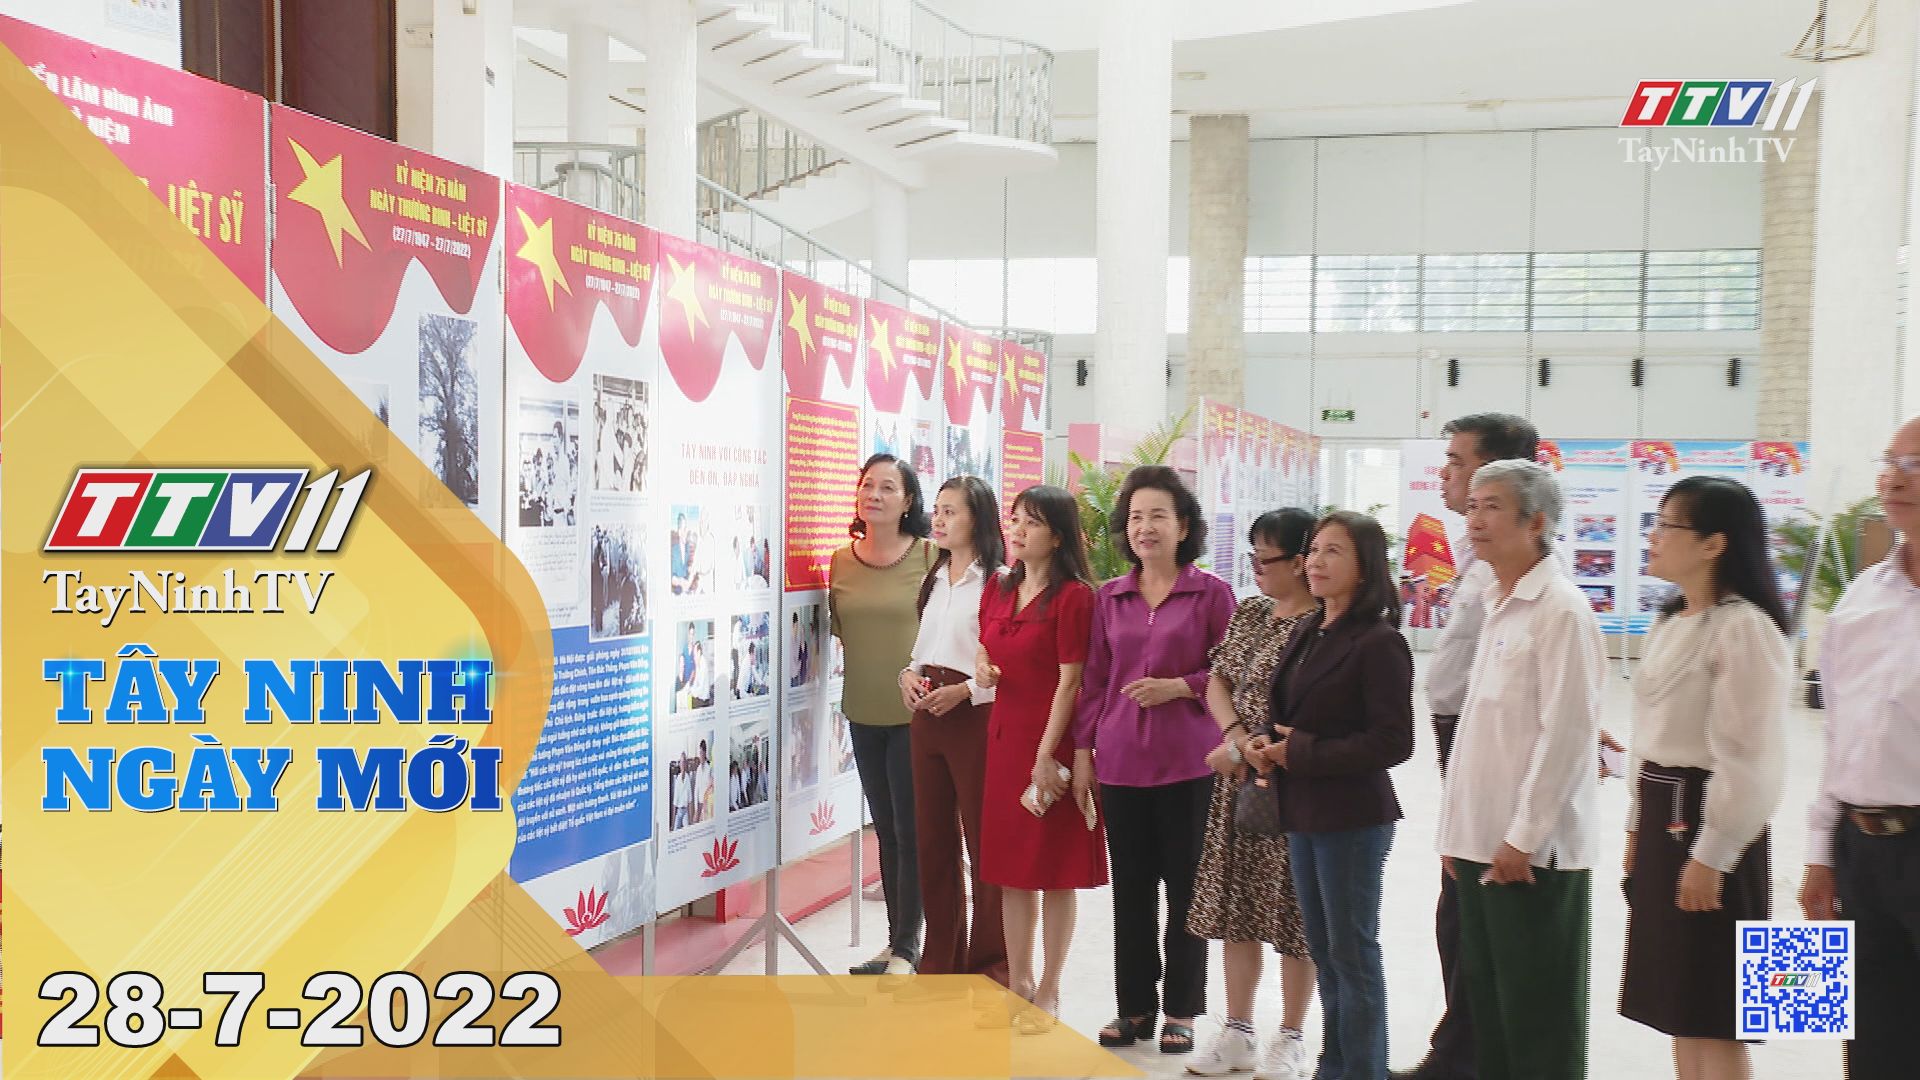 Tây Ninh ngày mới 28-7-2022 | Tin tức hôm nay | TayNinhTV